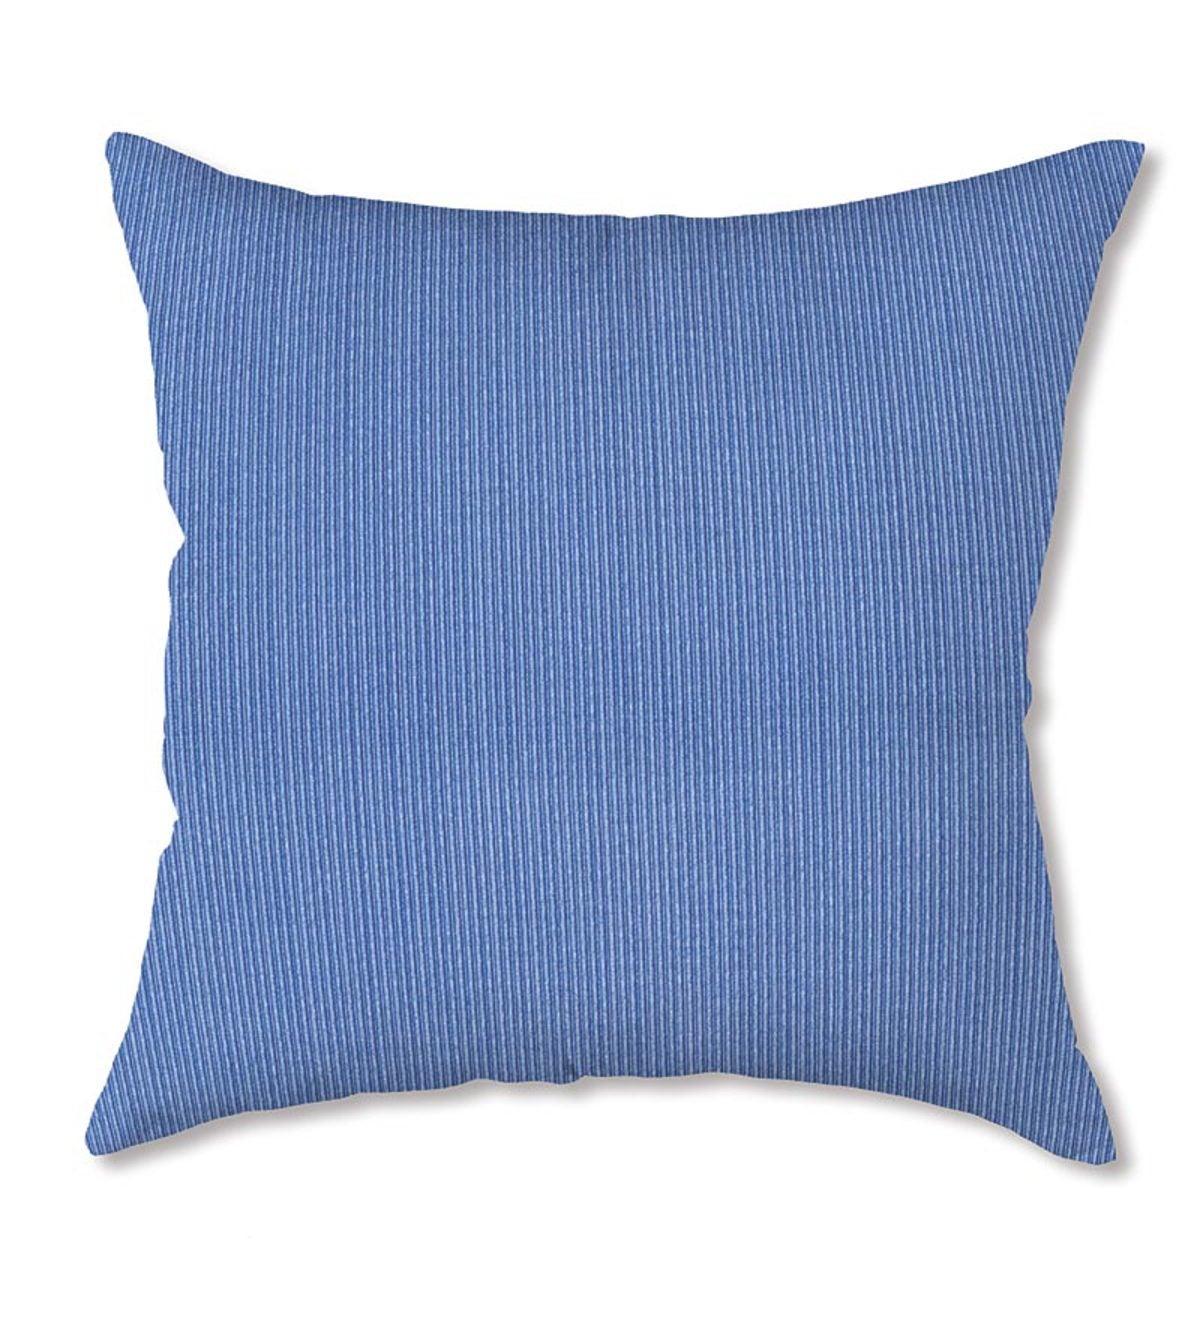 15”Outdoor Throw Pillow - Marine Stripe